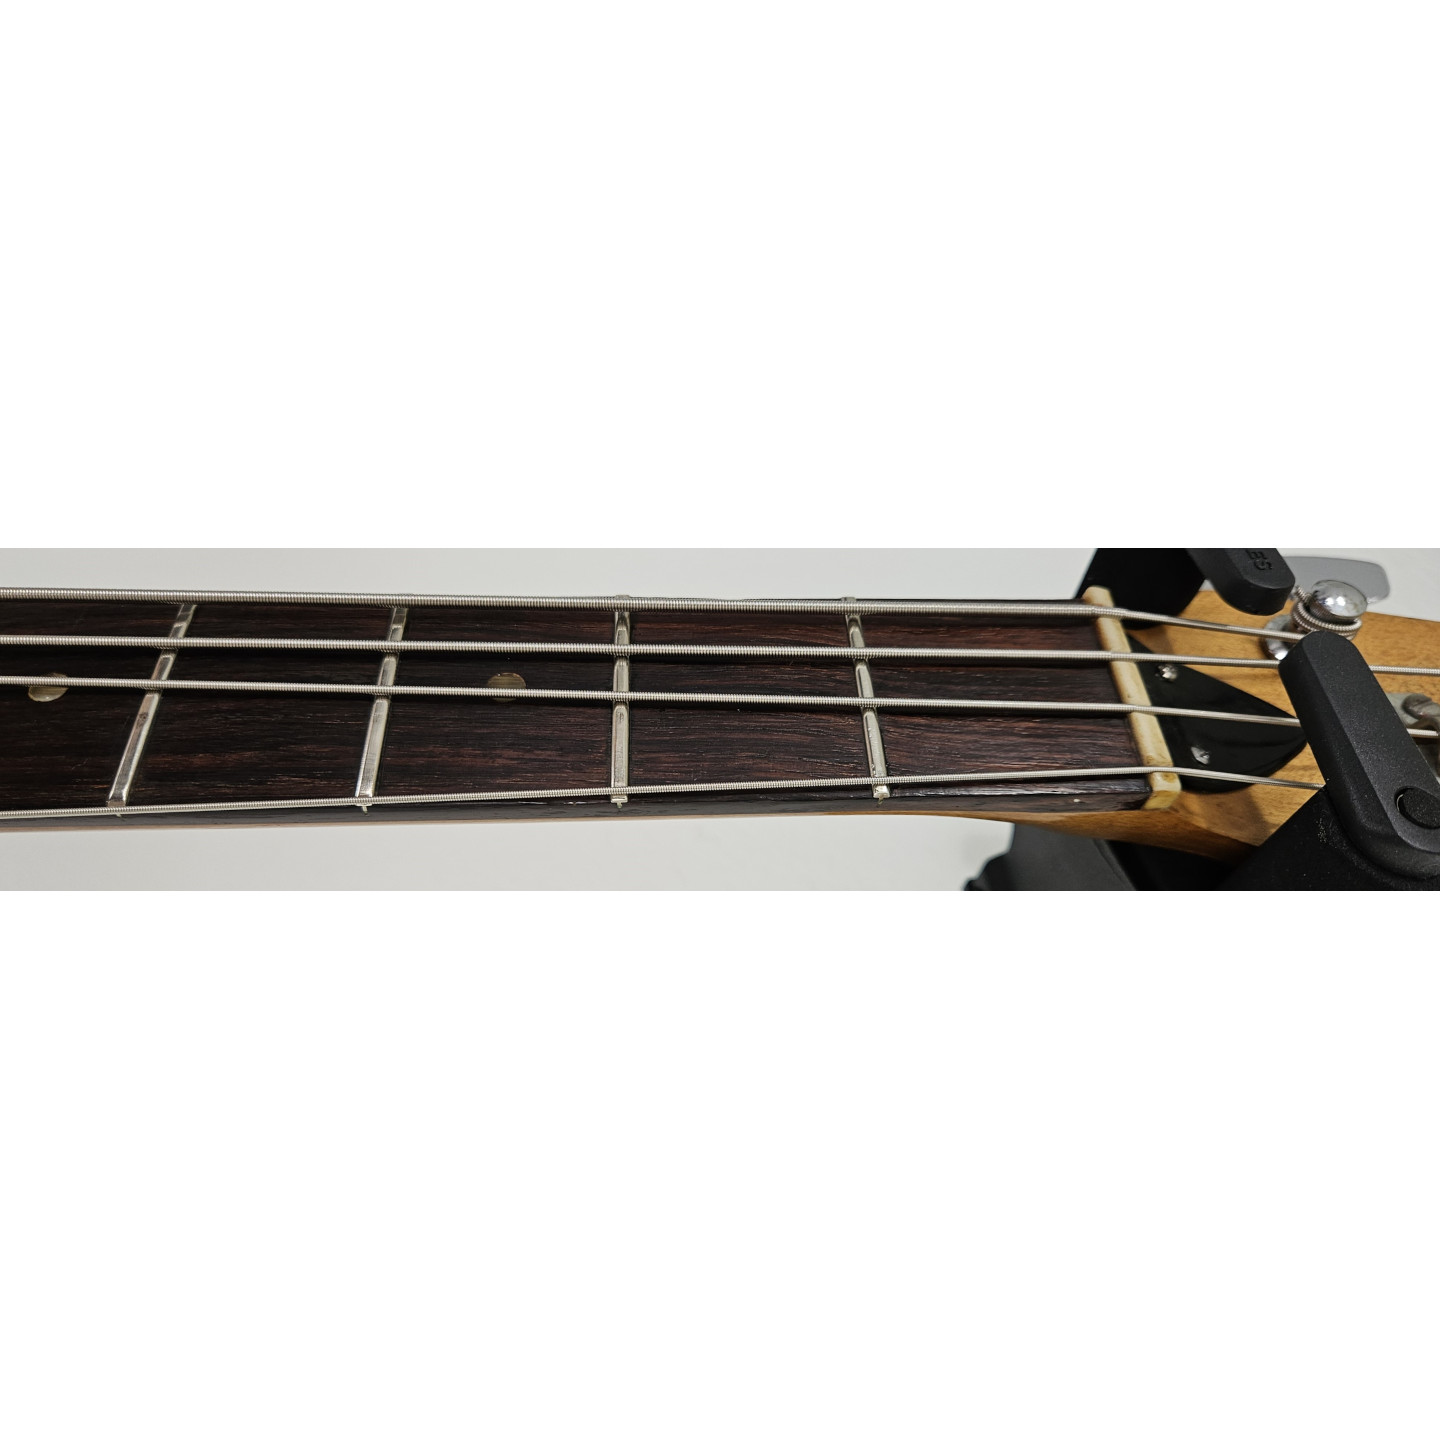 1966 Kalamazoo KB-1 Vintage Gibson USA American Bass Guitar